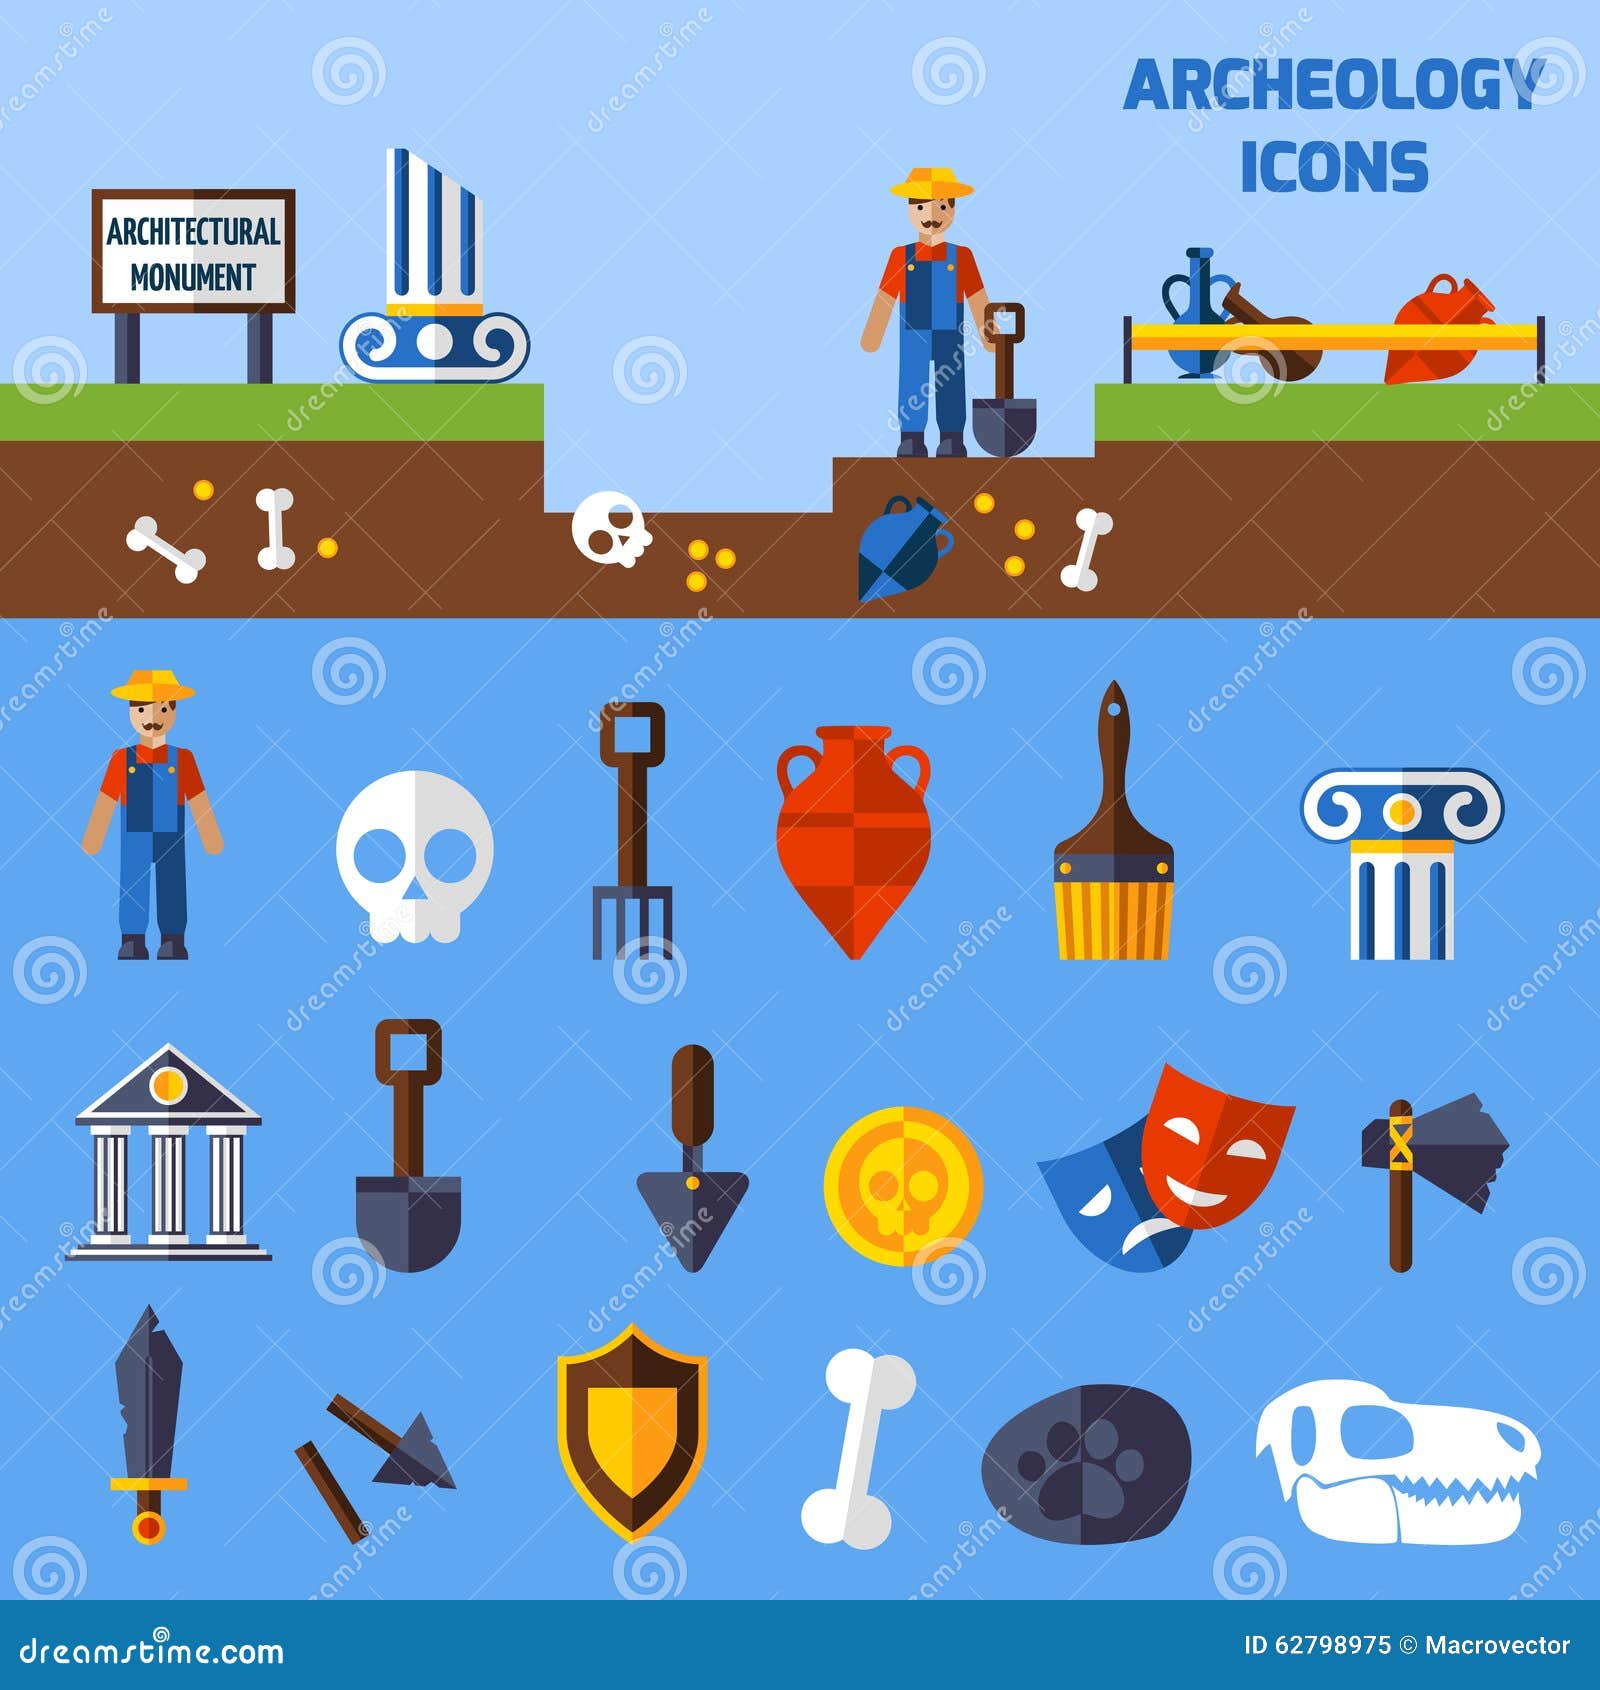 archeology icons set